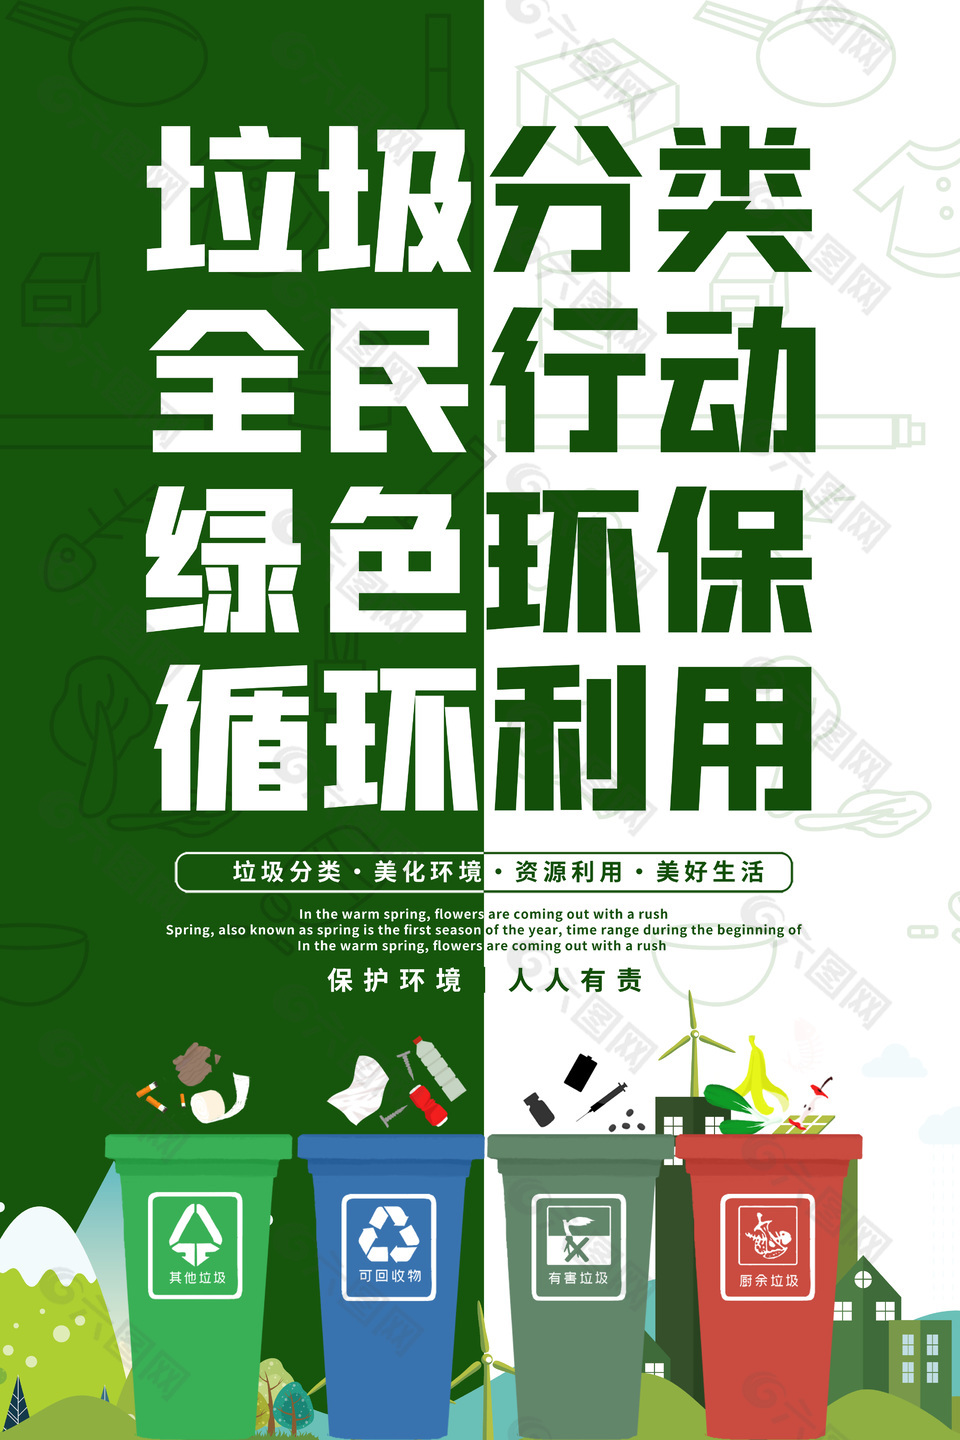 垃圾分类保护环境公益环保海报下载